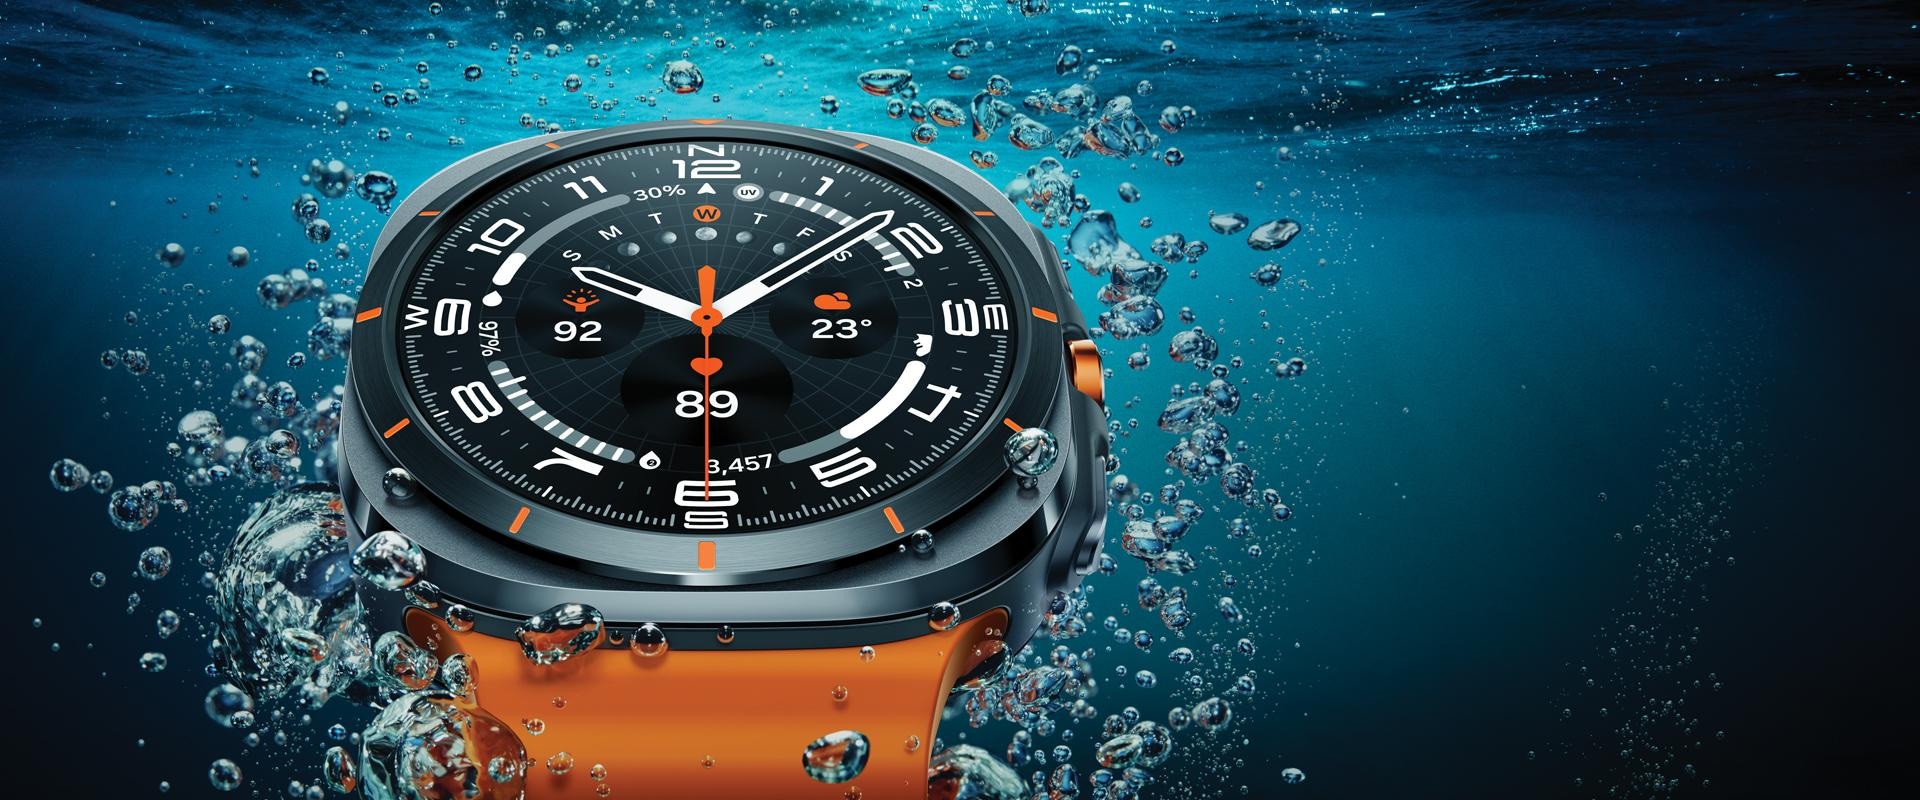 Blízko vodnej hladiny vidíme detailný záber, ktorý predstavuje nový dizajn Galaxy Watch Ultra.